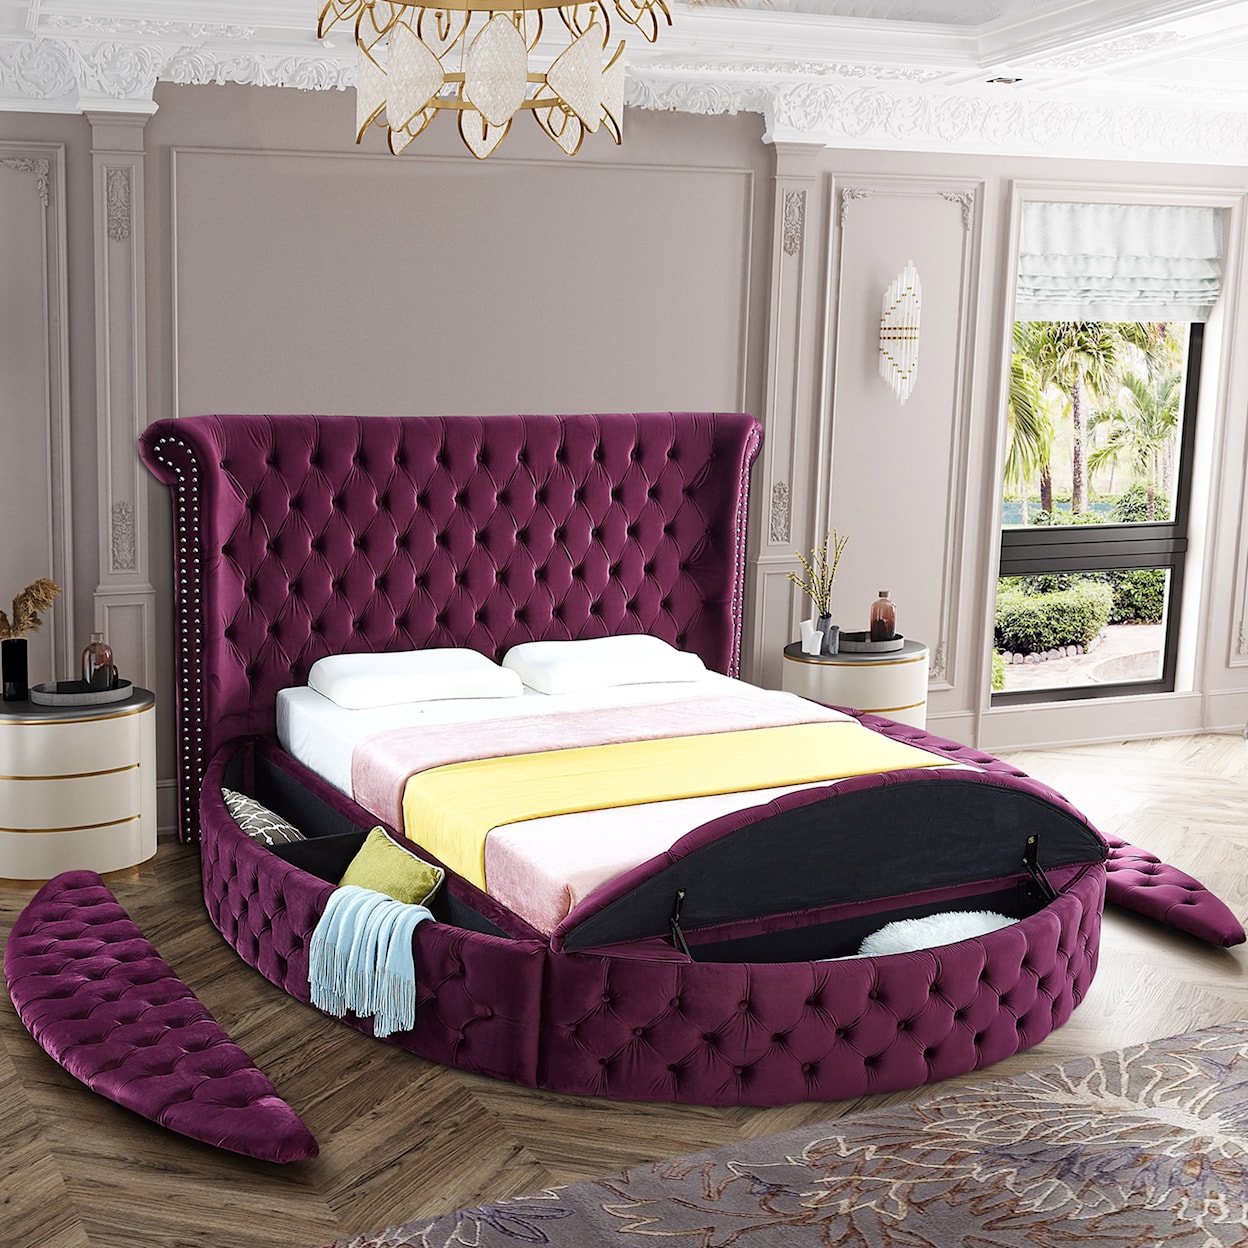 Meridian Furniture Luxus Queen Bed